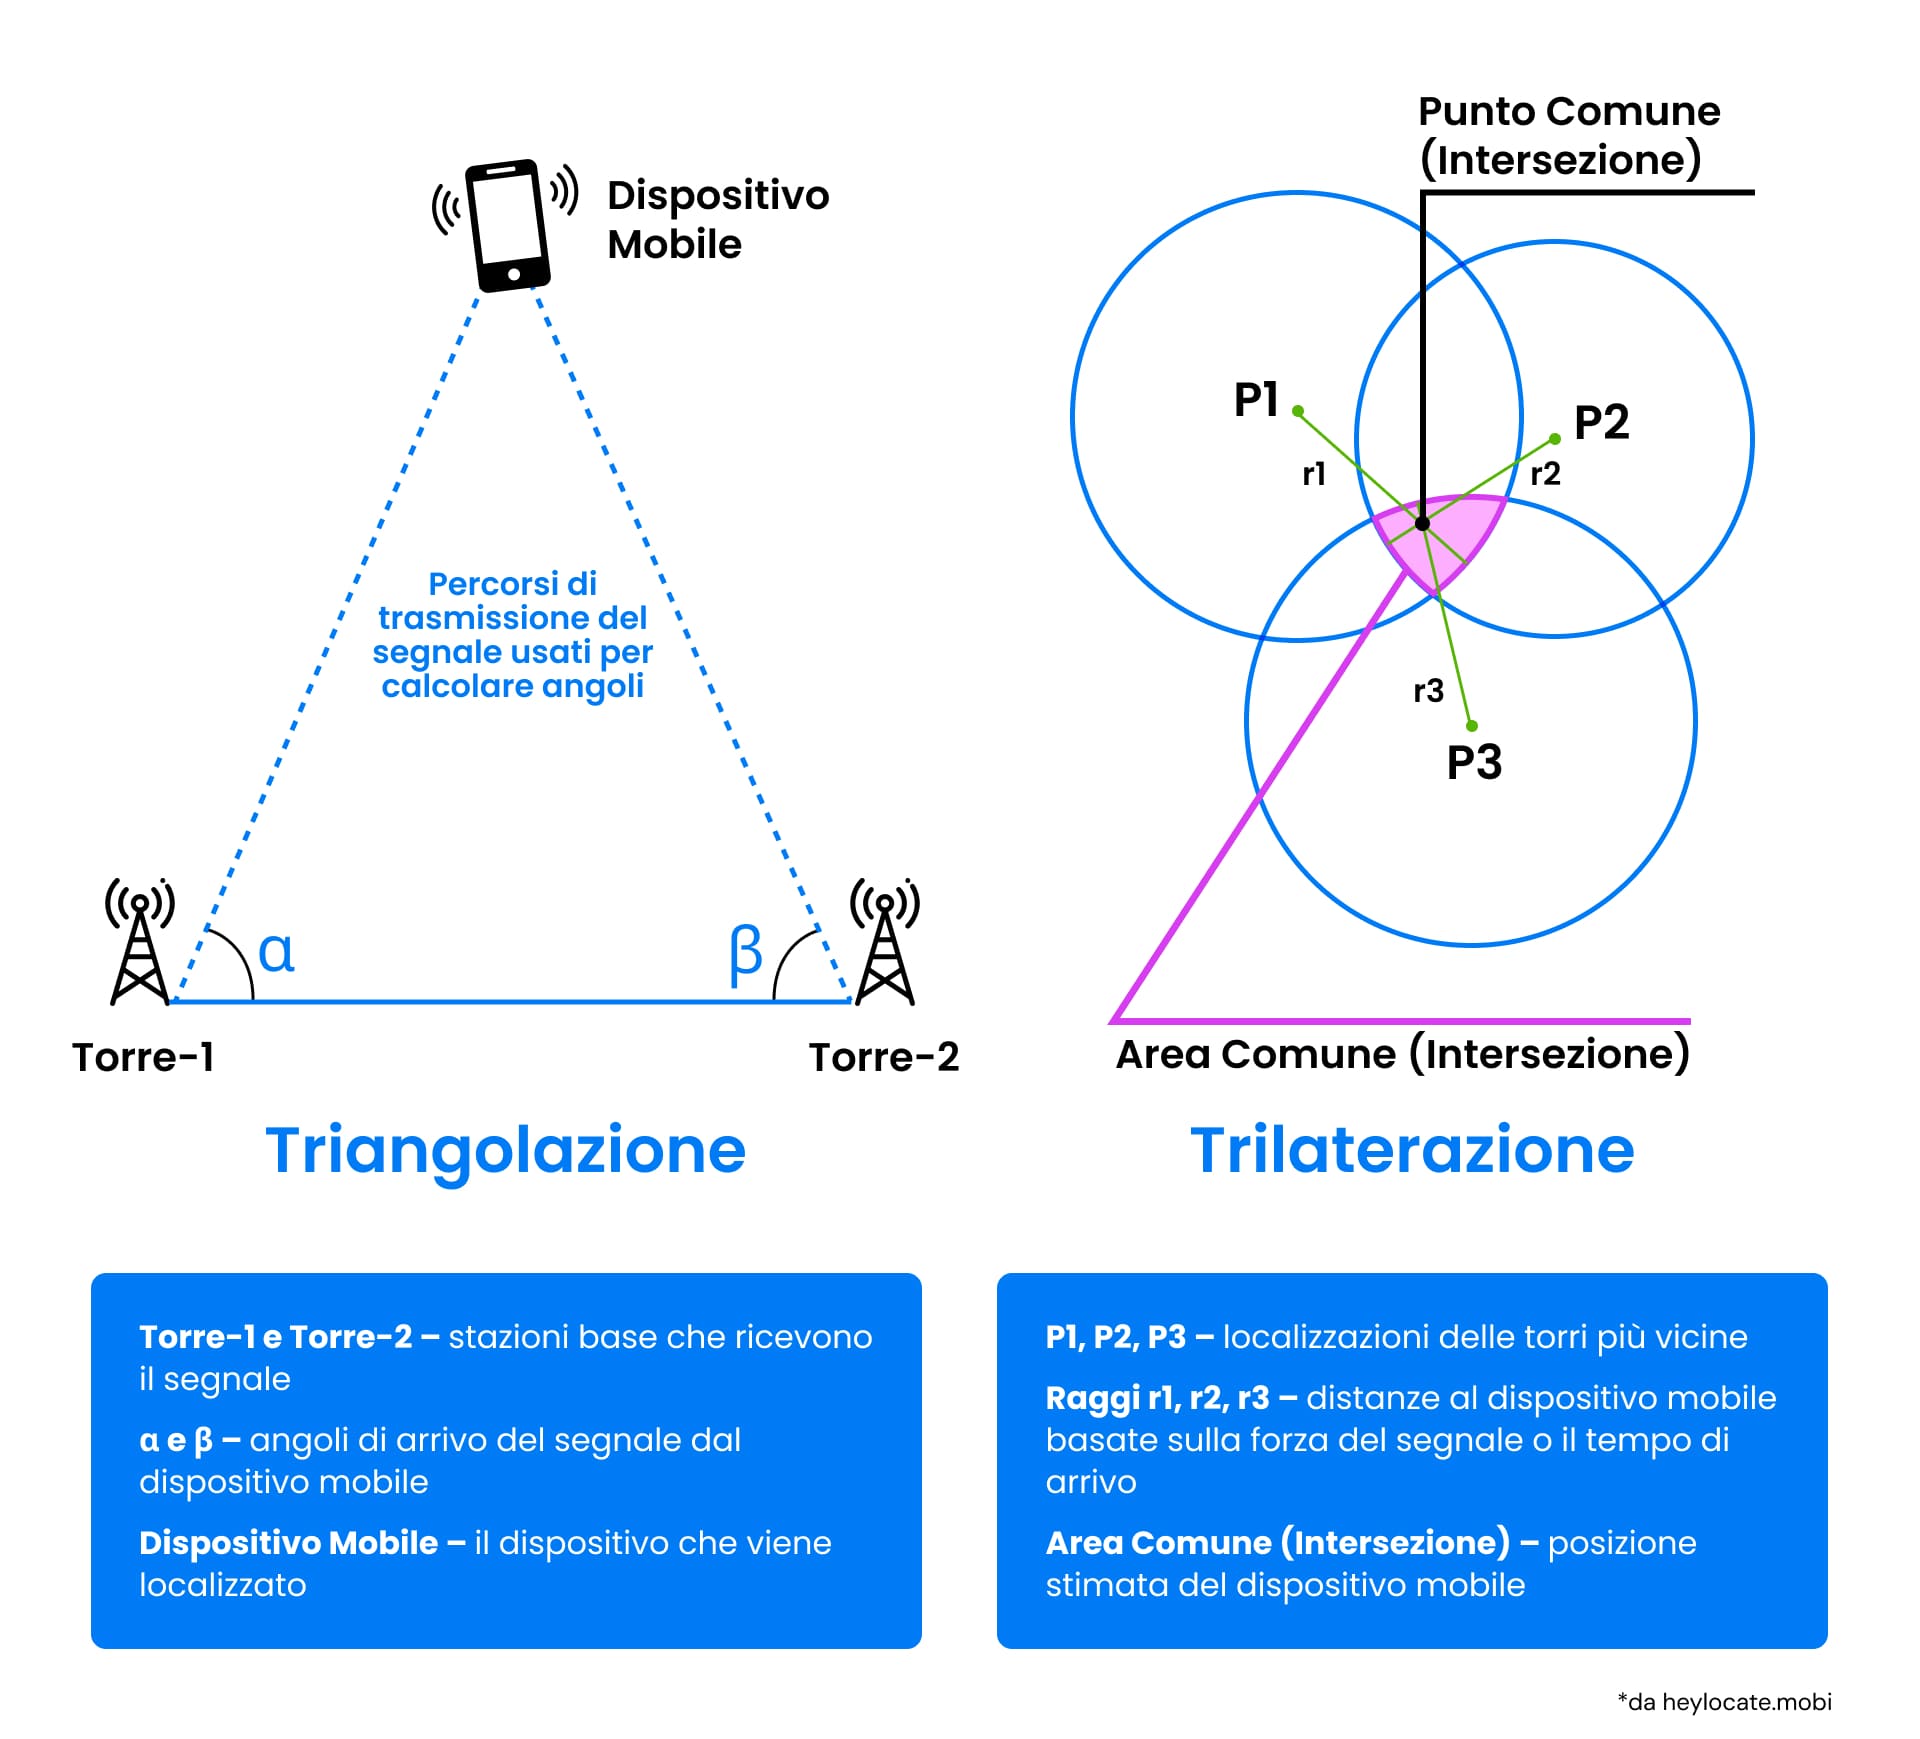 Illustrazione comparativa delle tecniche di triangolazione e trilaterazione utilizzate nelle reti mobili per la localizzazione dei telefoni cellulari utilizzando gli angoli e le intersezioni dei segnali provenienti dalle torri cellulari, con una nota esplicativa